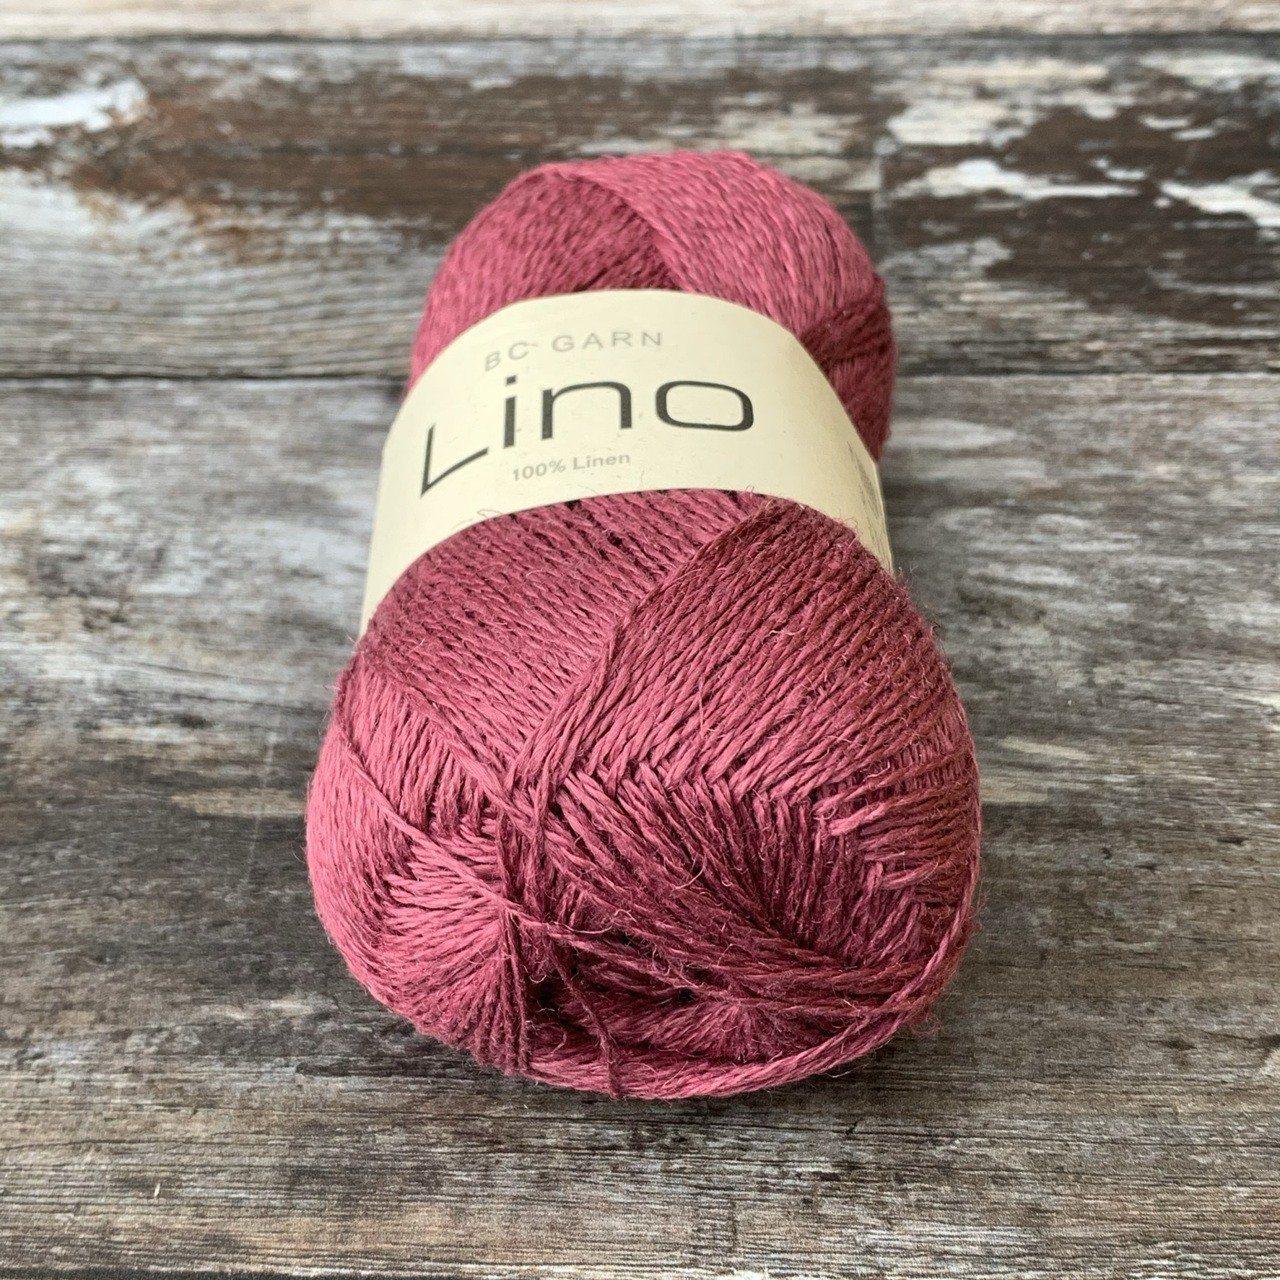 BC Garn BC Garn Lino - Grape (41) - 4ply Knitting Yarn